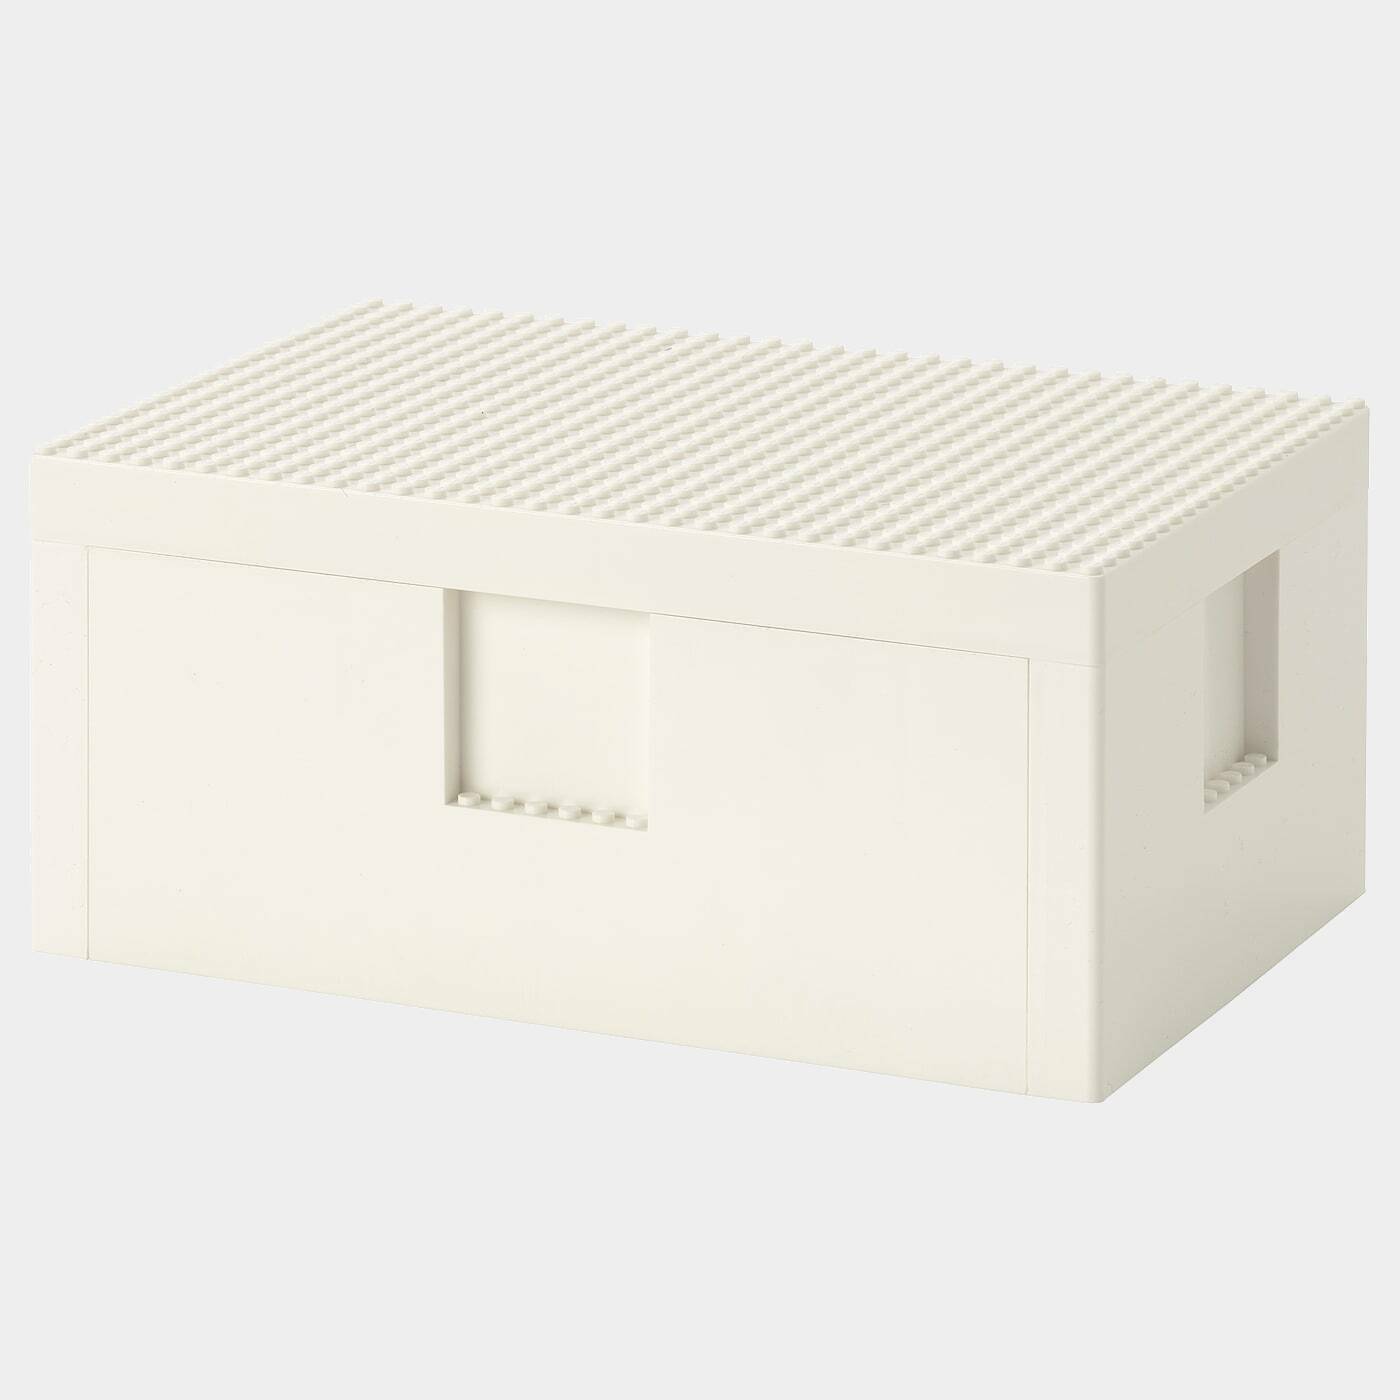 BYGGLEK LEGO®-Schachtel mit Deckel  -  - Möbel Ideen für dein Zuhause von Home Trends. Möbel Trends von Social Media Influencer für dein Skandi Zuhause.